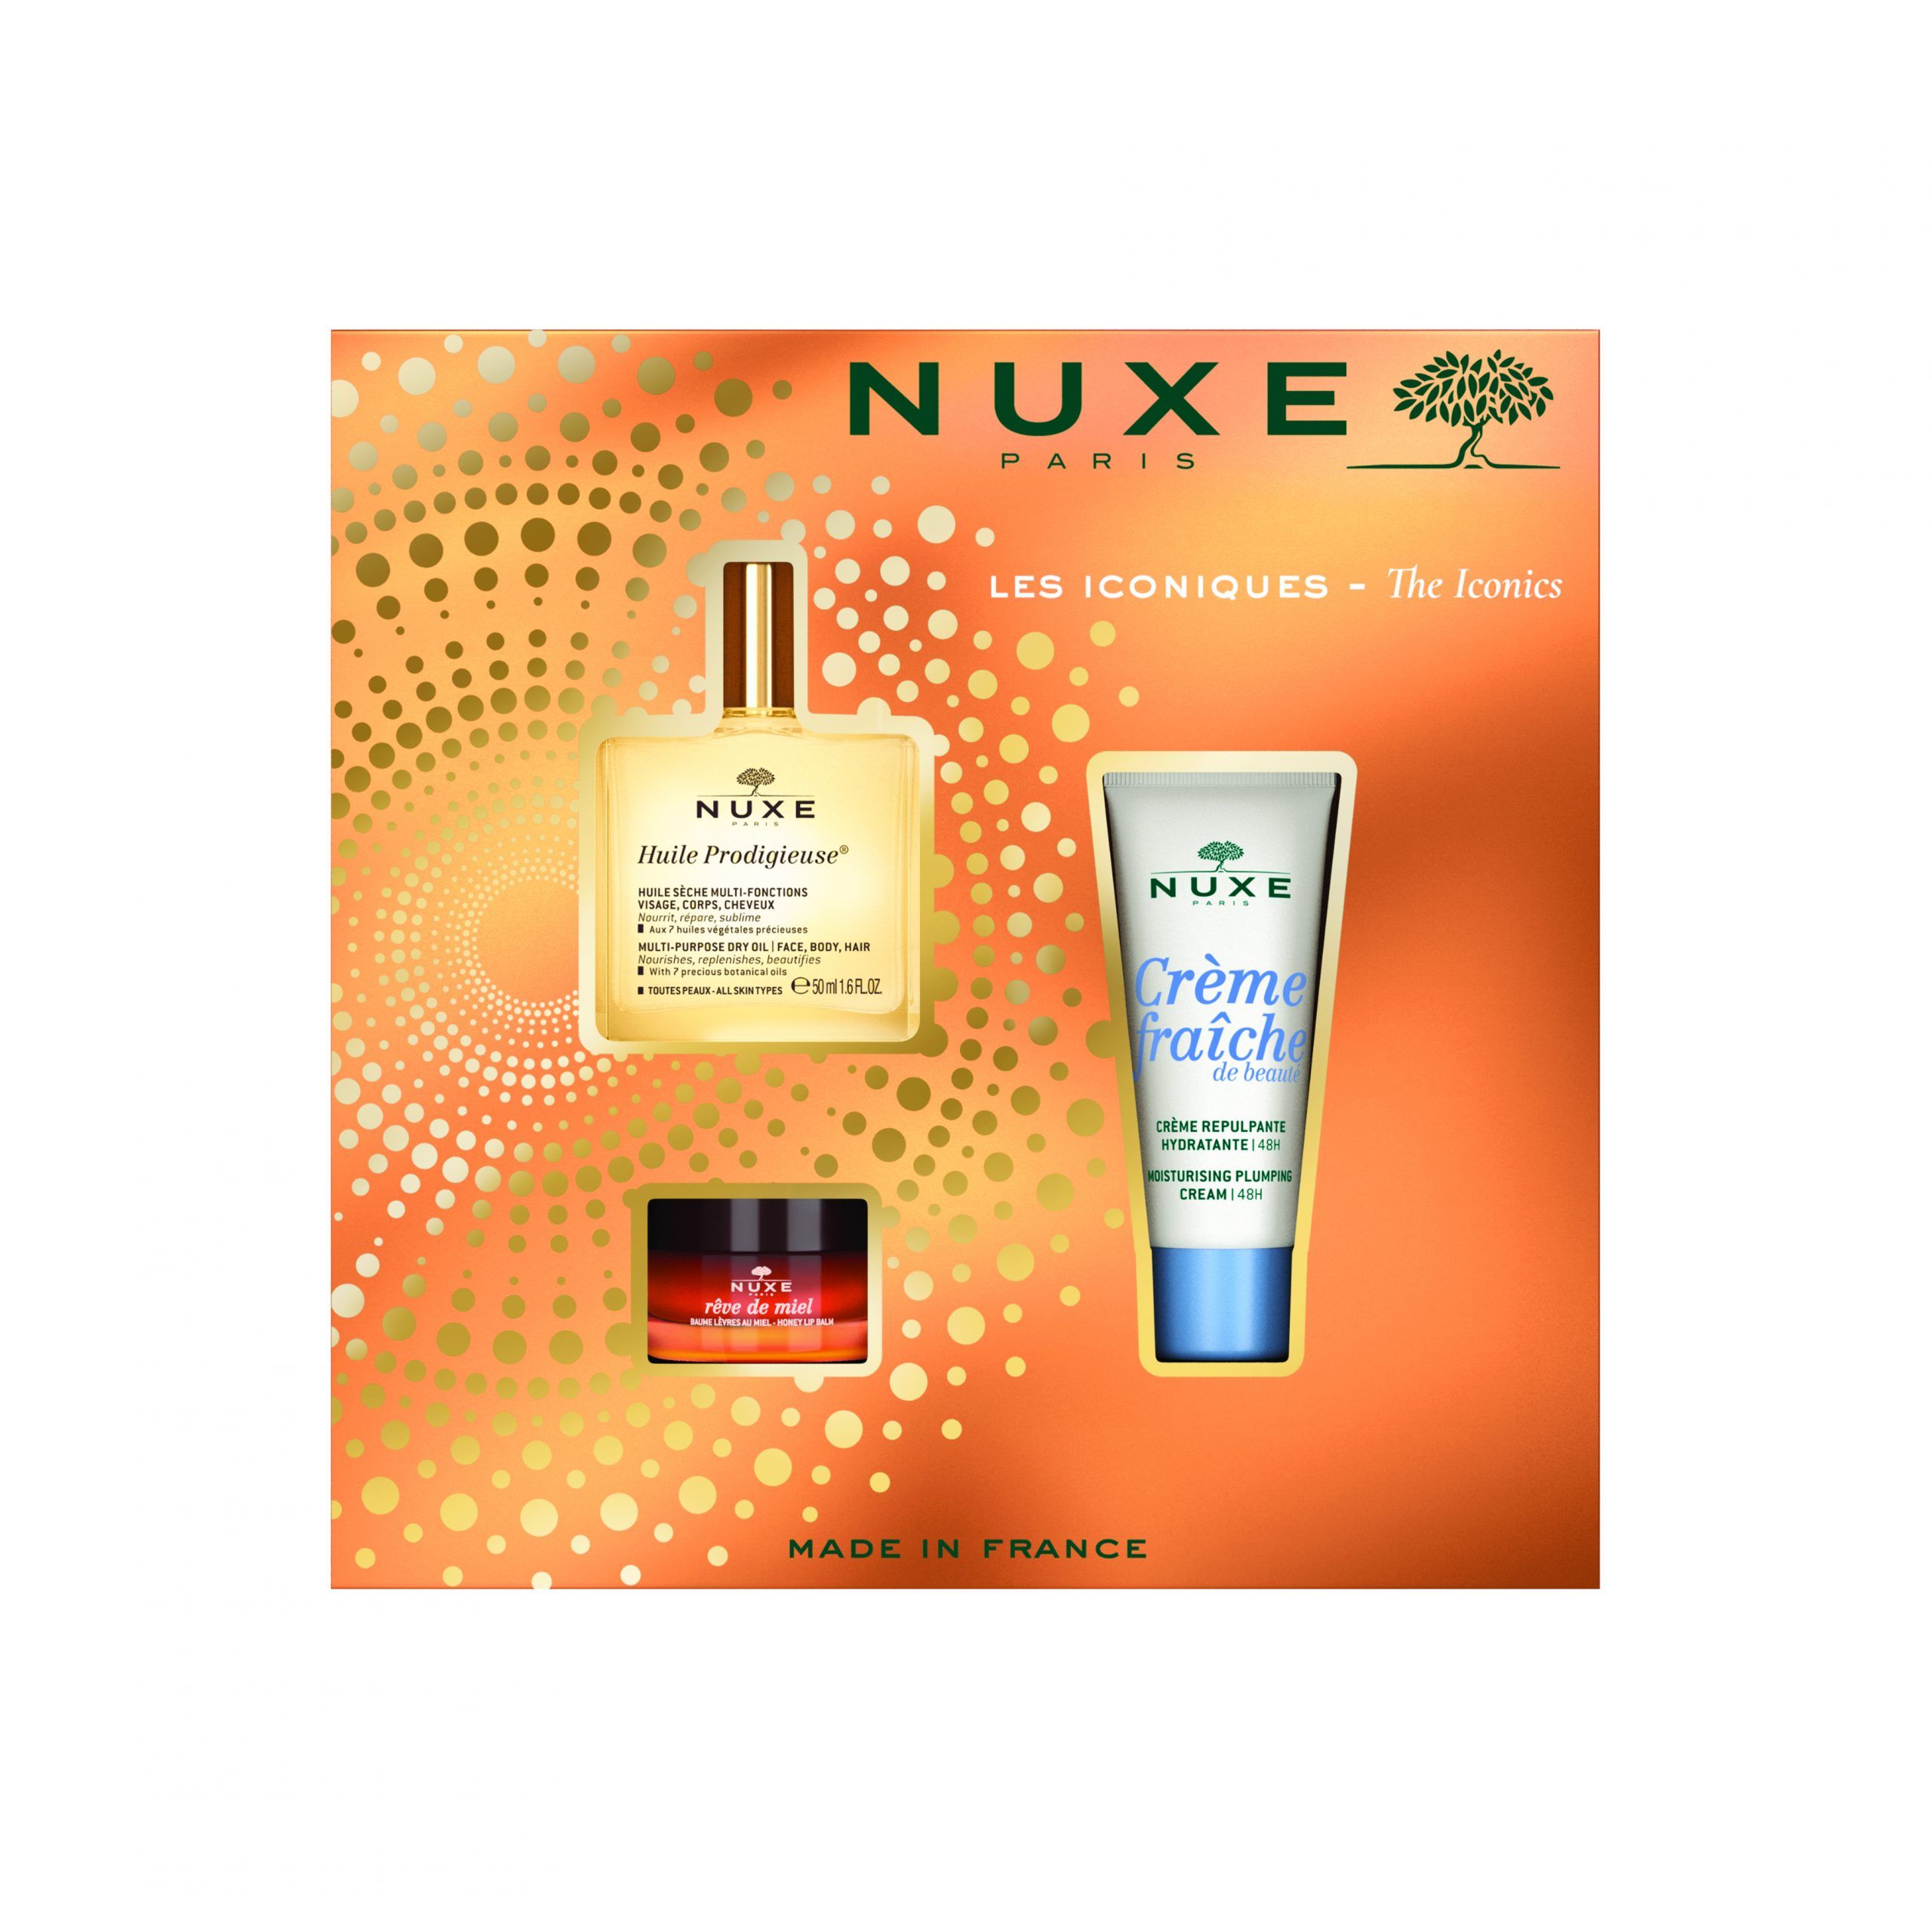 Estuche tratamiento facial: los esenciales para sublimar la belleza | NUXE